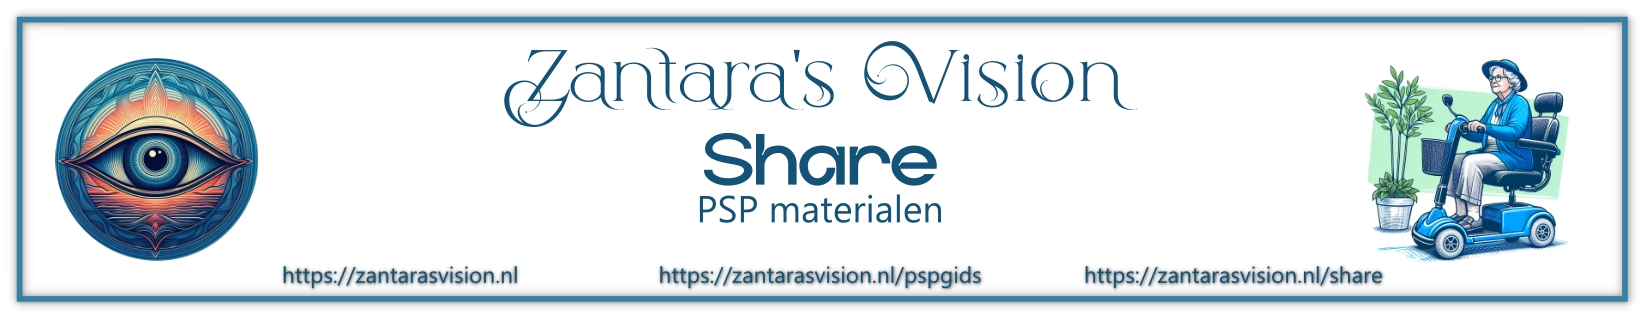 Zantara's Share